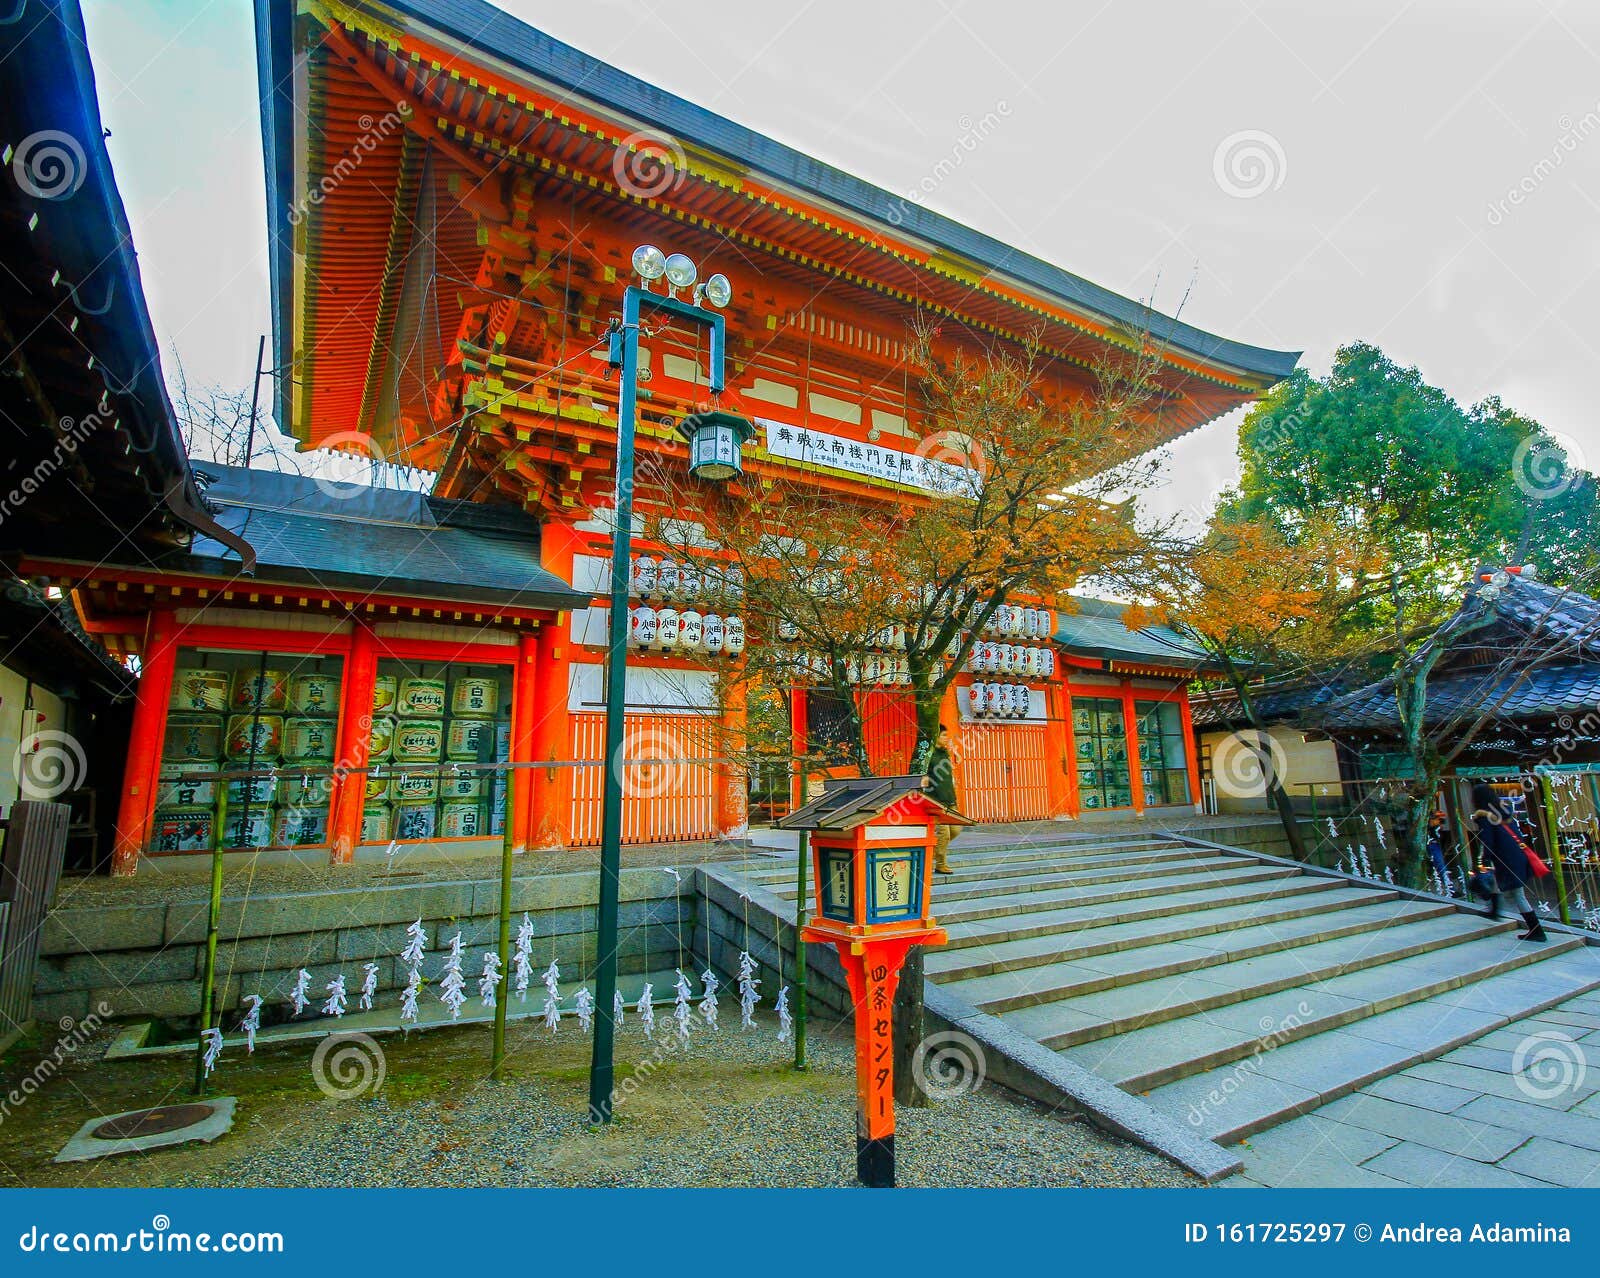 日本京都八坂神社的美景图库摄影片 图片包括有日本京都八坂神社的美景